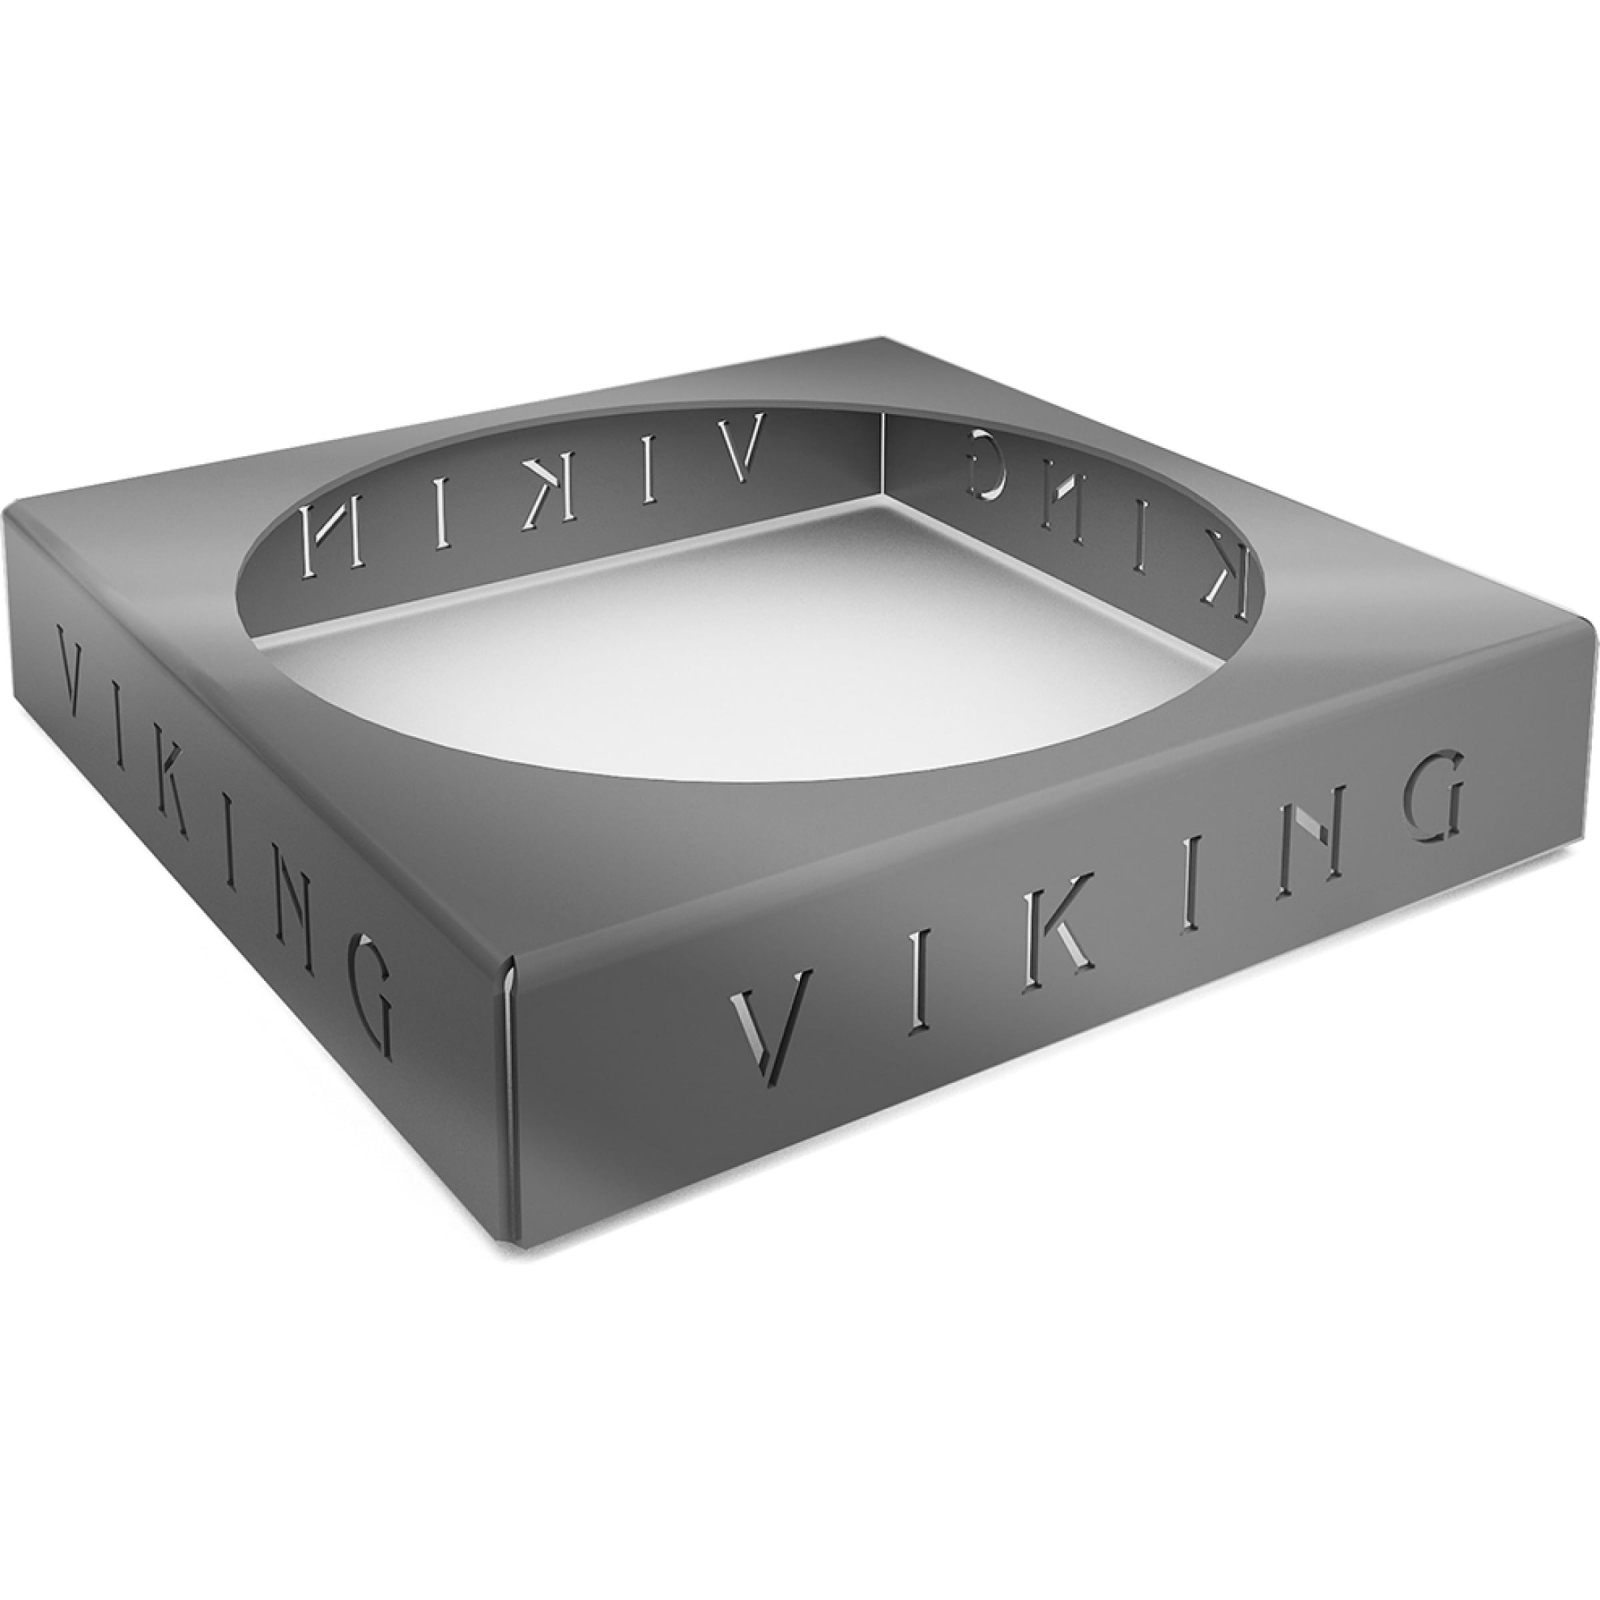 фото Подставка под казан grillux для viking